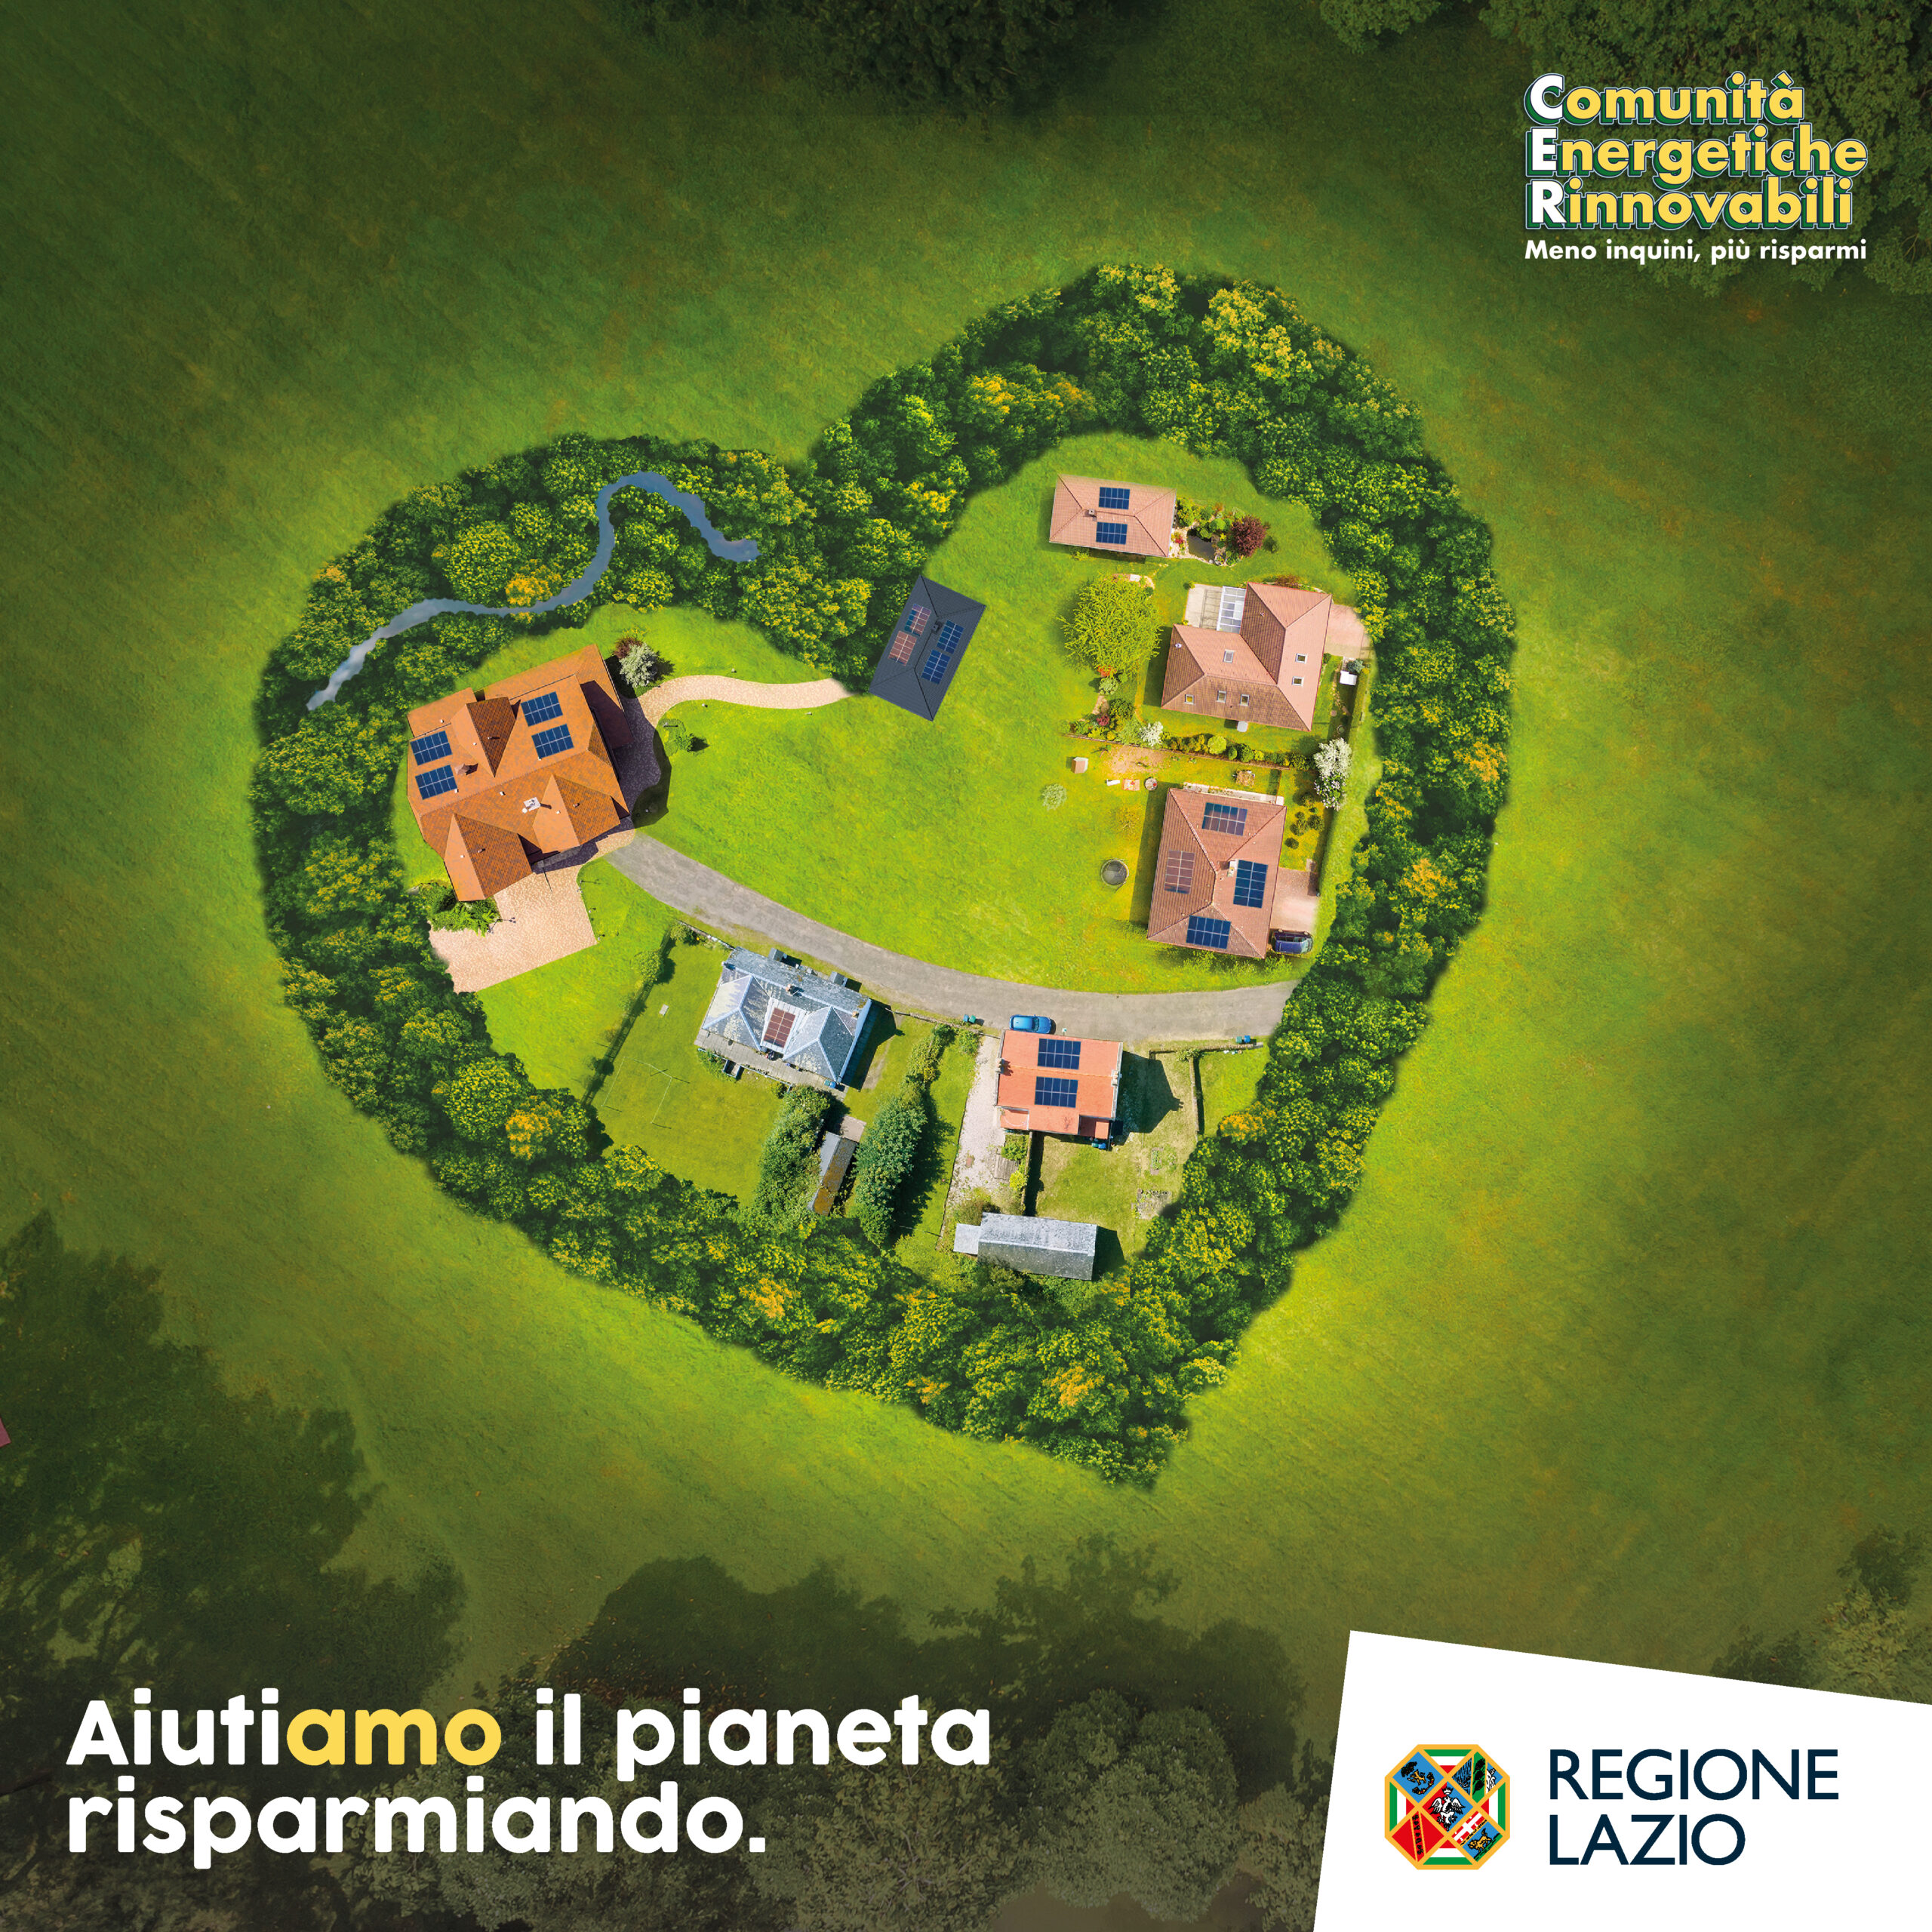 Bando per le Comunità Energetiche Rinnovabili nel Lazio